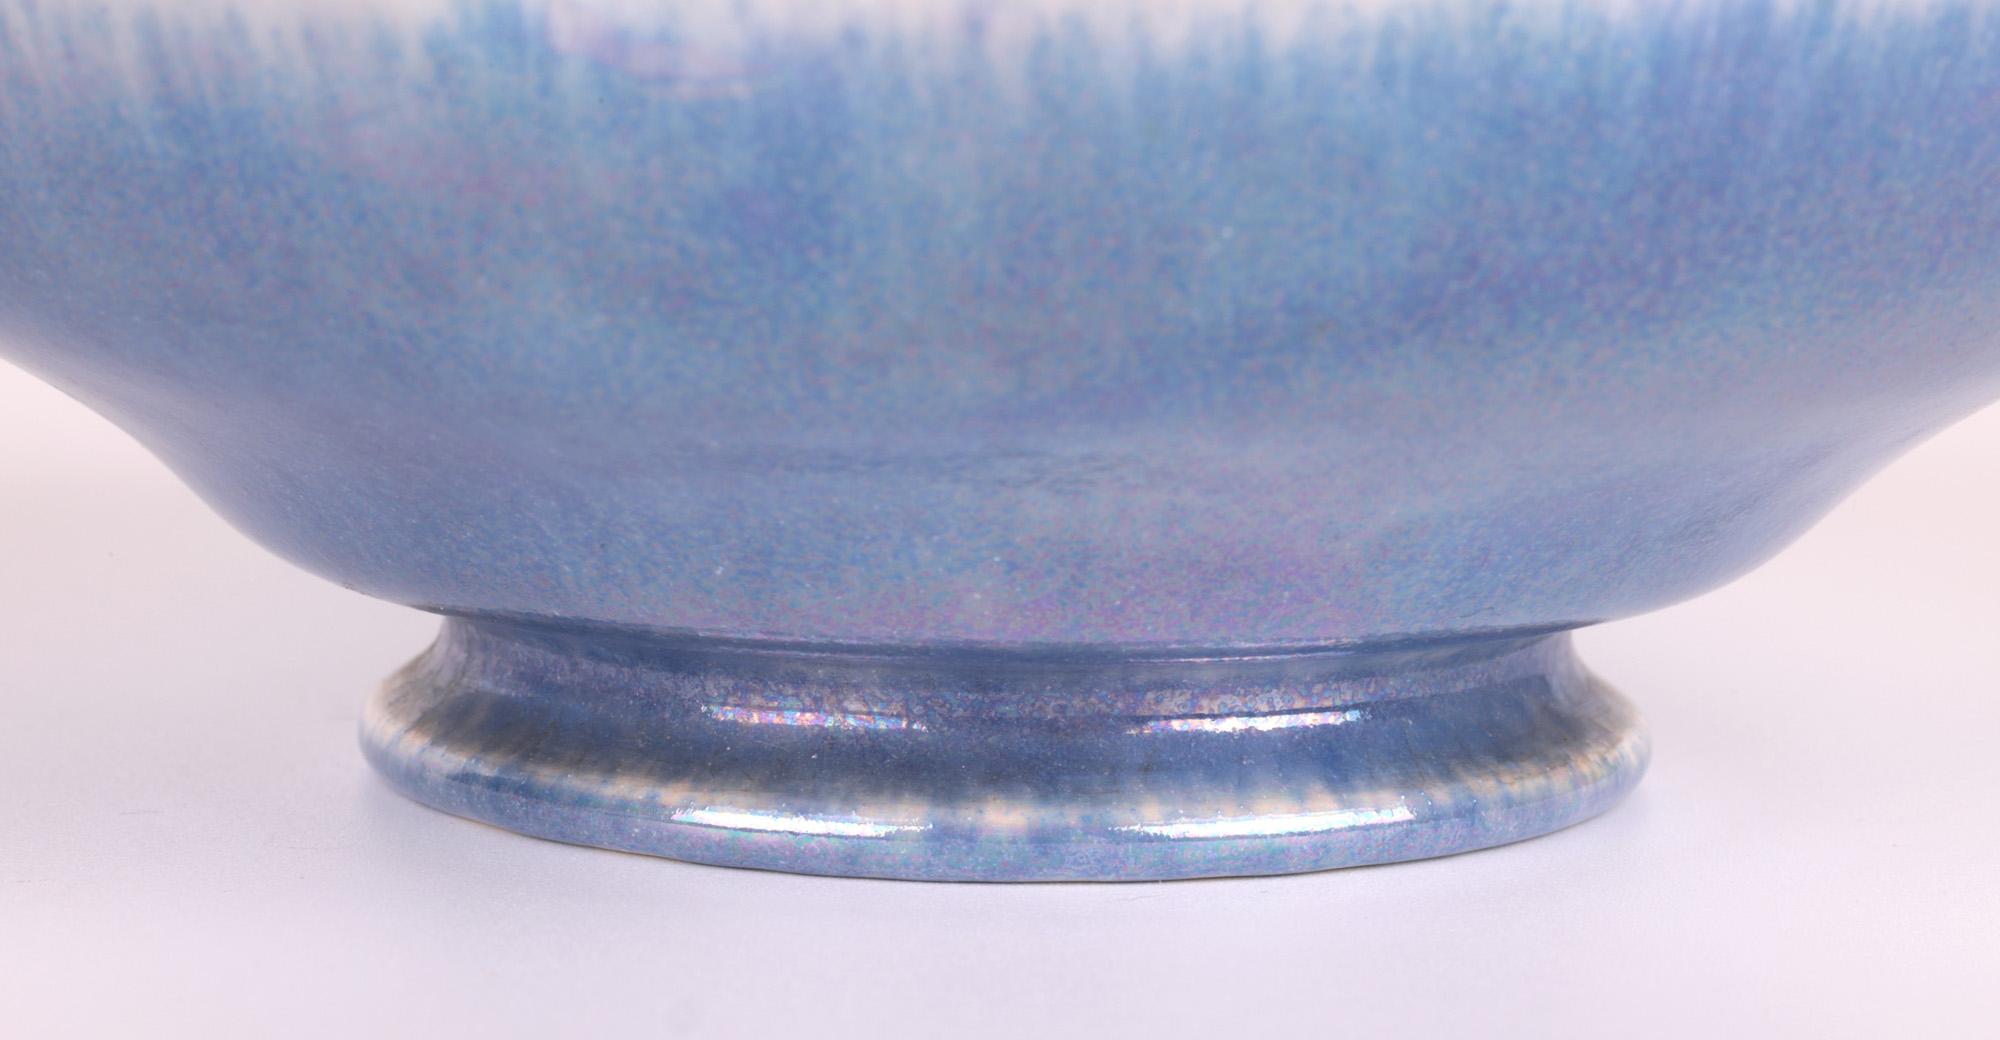 Un très beau bol en coquille d'œuf en poterie Ruskin Arts & Crafts, décoré de glaçures lilas lustrées par le célèbre potier William Howson Taylor (britannique, 1876 - 1935), datant de la première moitié du XXe siècle et indistinctement daté. 
Ruskin